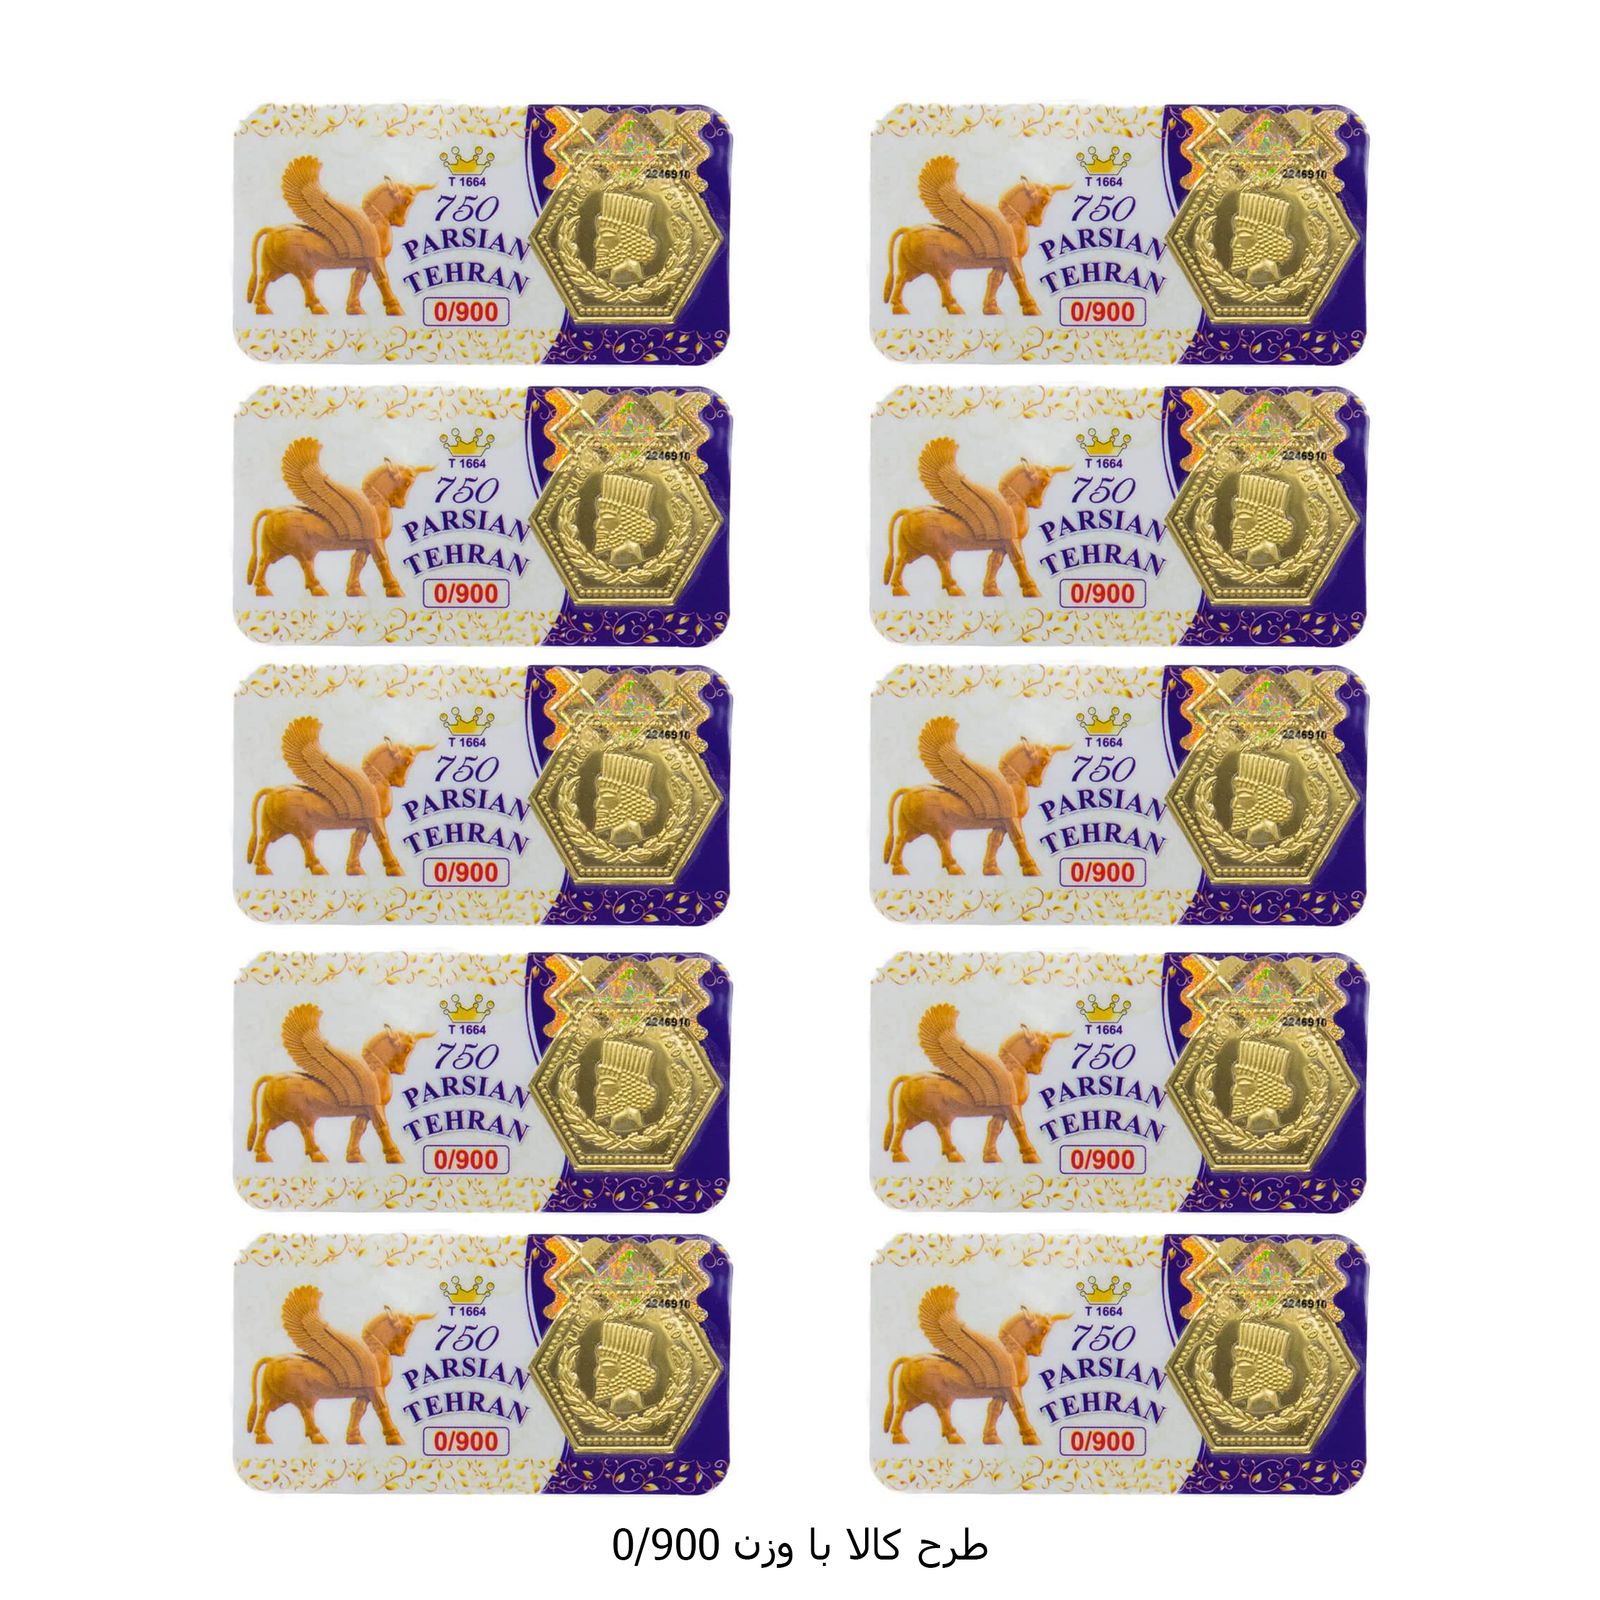 سکه گرمی طلا 18 عیار پارسیان تهران مدل K412 مجموعه 10 عددی -  - 16